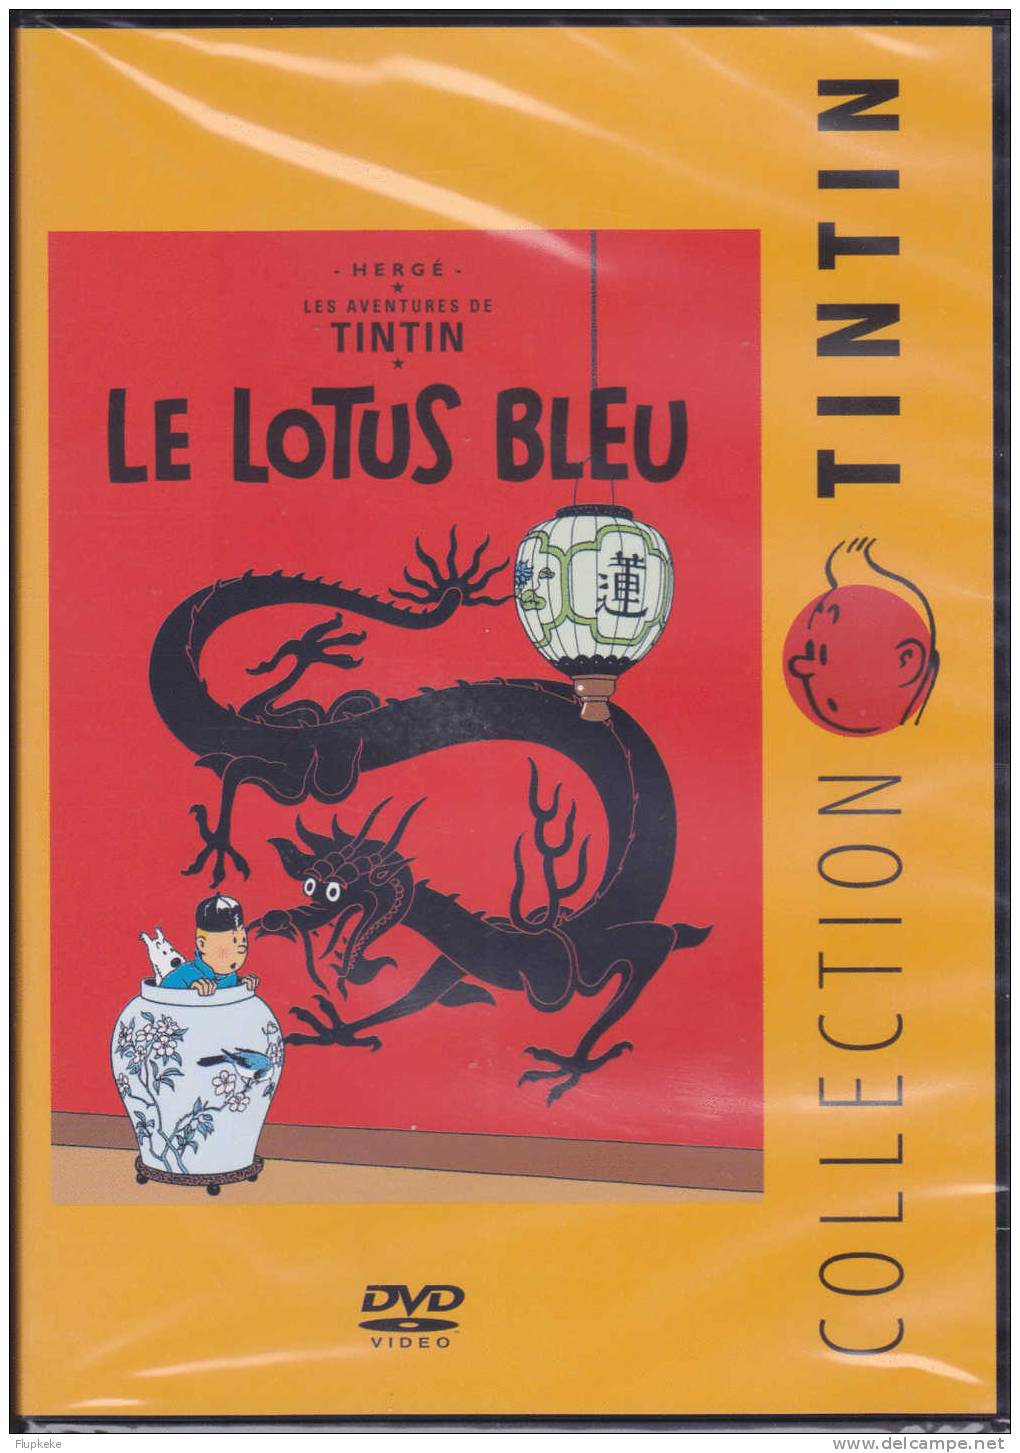 Dvd Zone 2 Le Lotus Bleu Collection Tintin Version Française Neuf Et Scellé Avec Livret Tout Savoir 01 Citel Vidéo 2010 - Action, Aventure